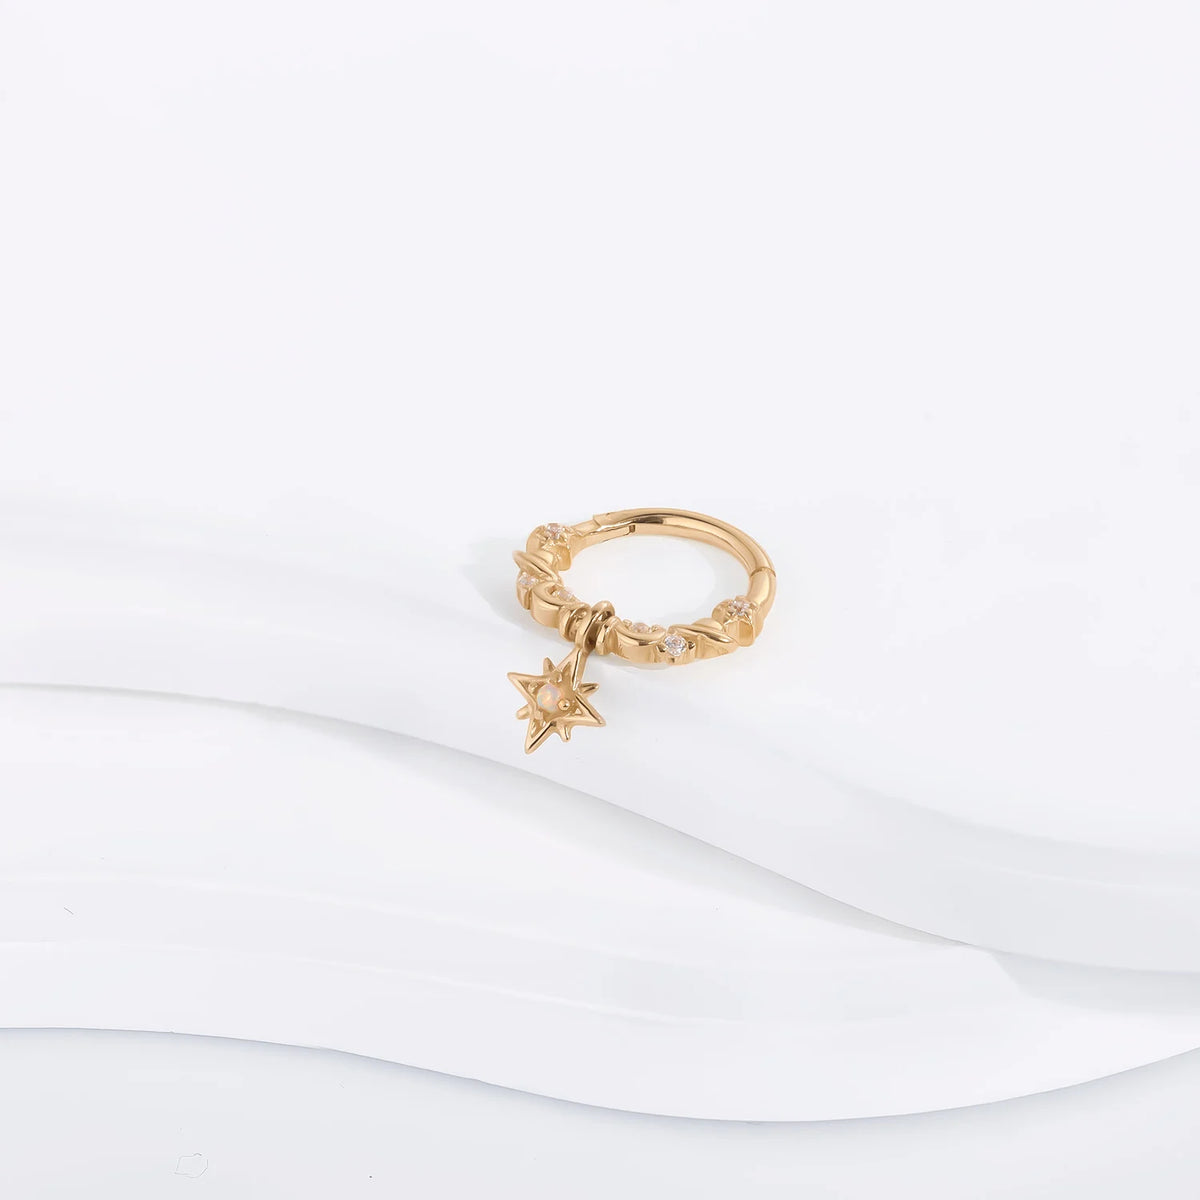 Cerchio in oro 14 carati con pendente opale orecchino pendente segmento clicker anello al naso stile principessa carino e grazioso piercing al setto daith